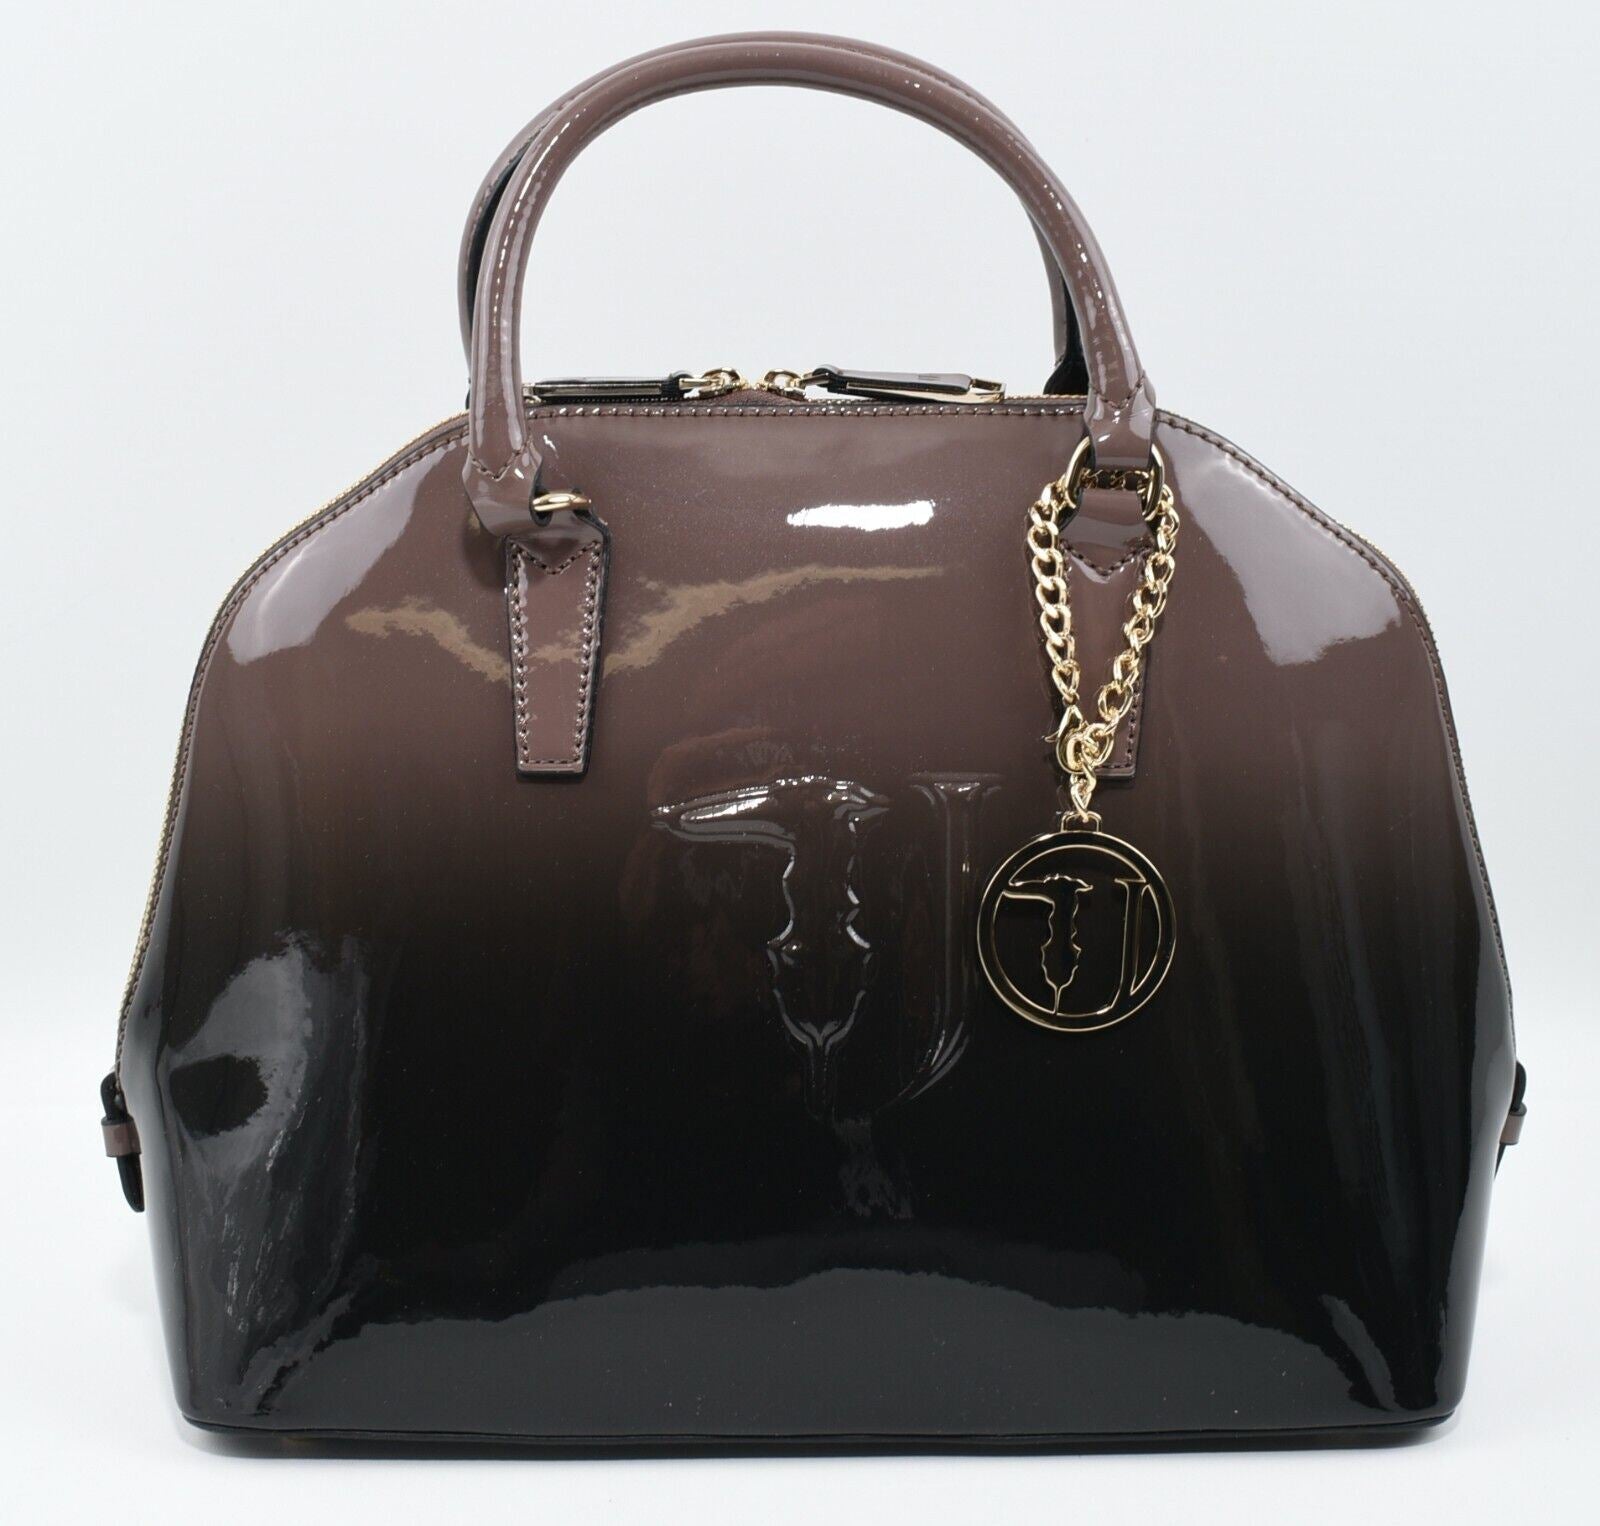 TRUSSARDI JEANS - Ombre Rose Taupe Designer Handbag, Top Handle/Shoulder